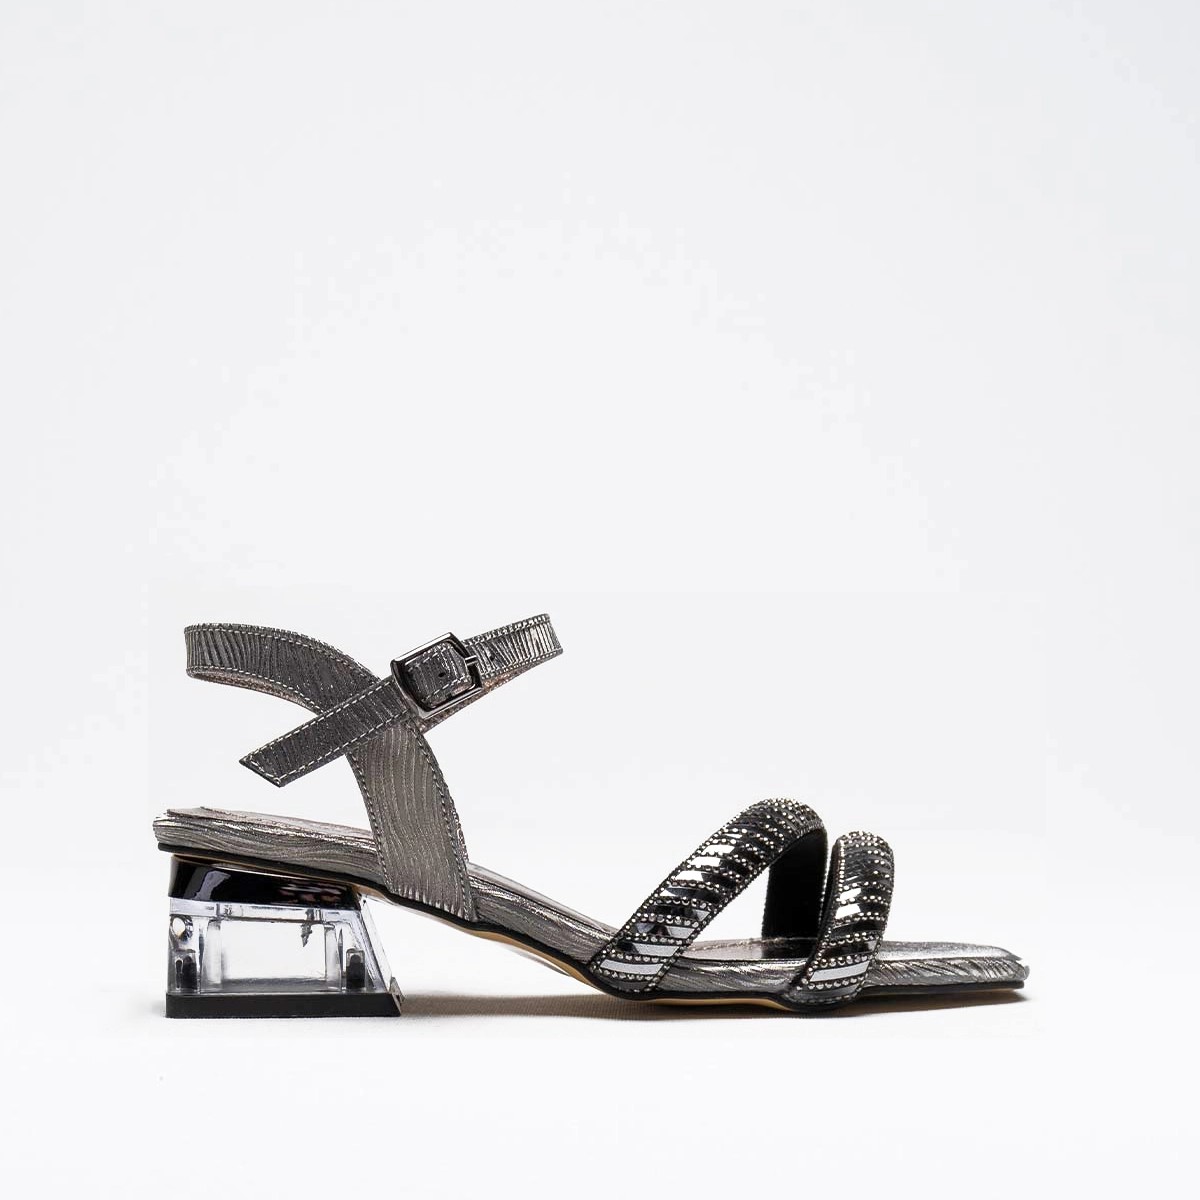 Tekstil Taşlı Kalın Kısa Topuklu Sandalet - Platin